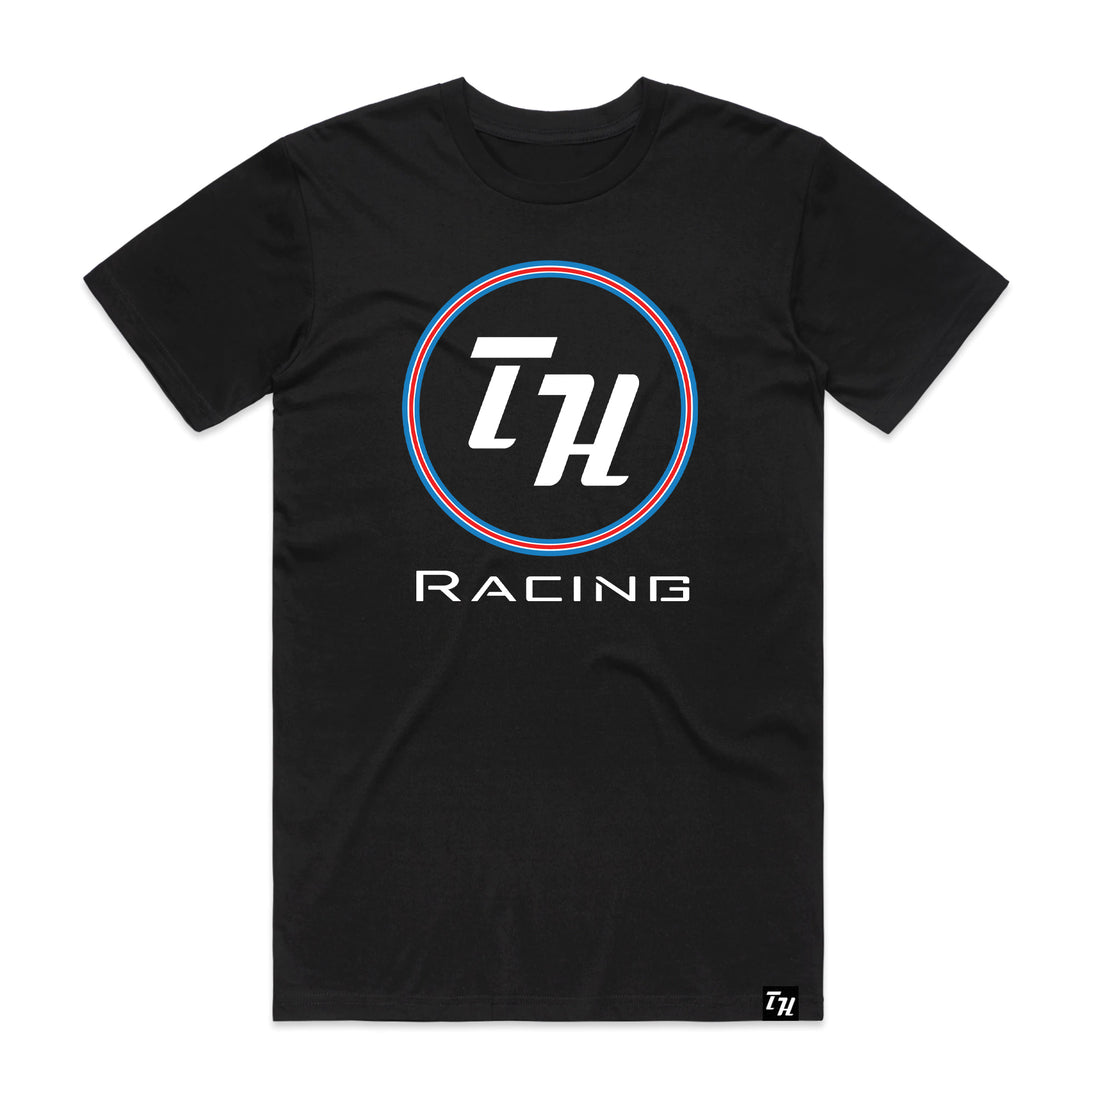 Throttle House - Racing Team - Black Unisex Tee